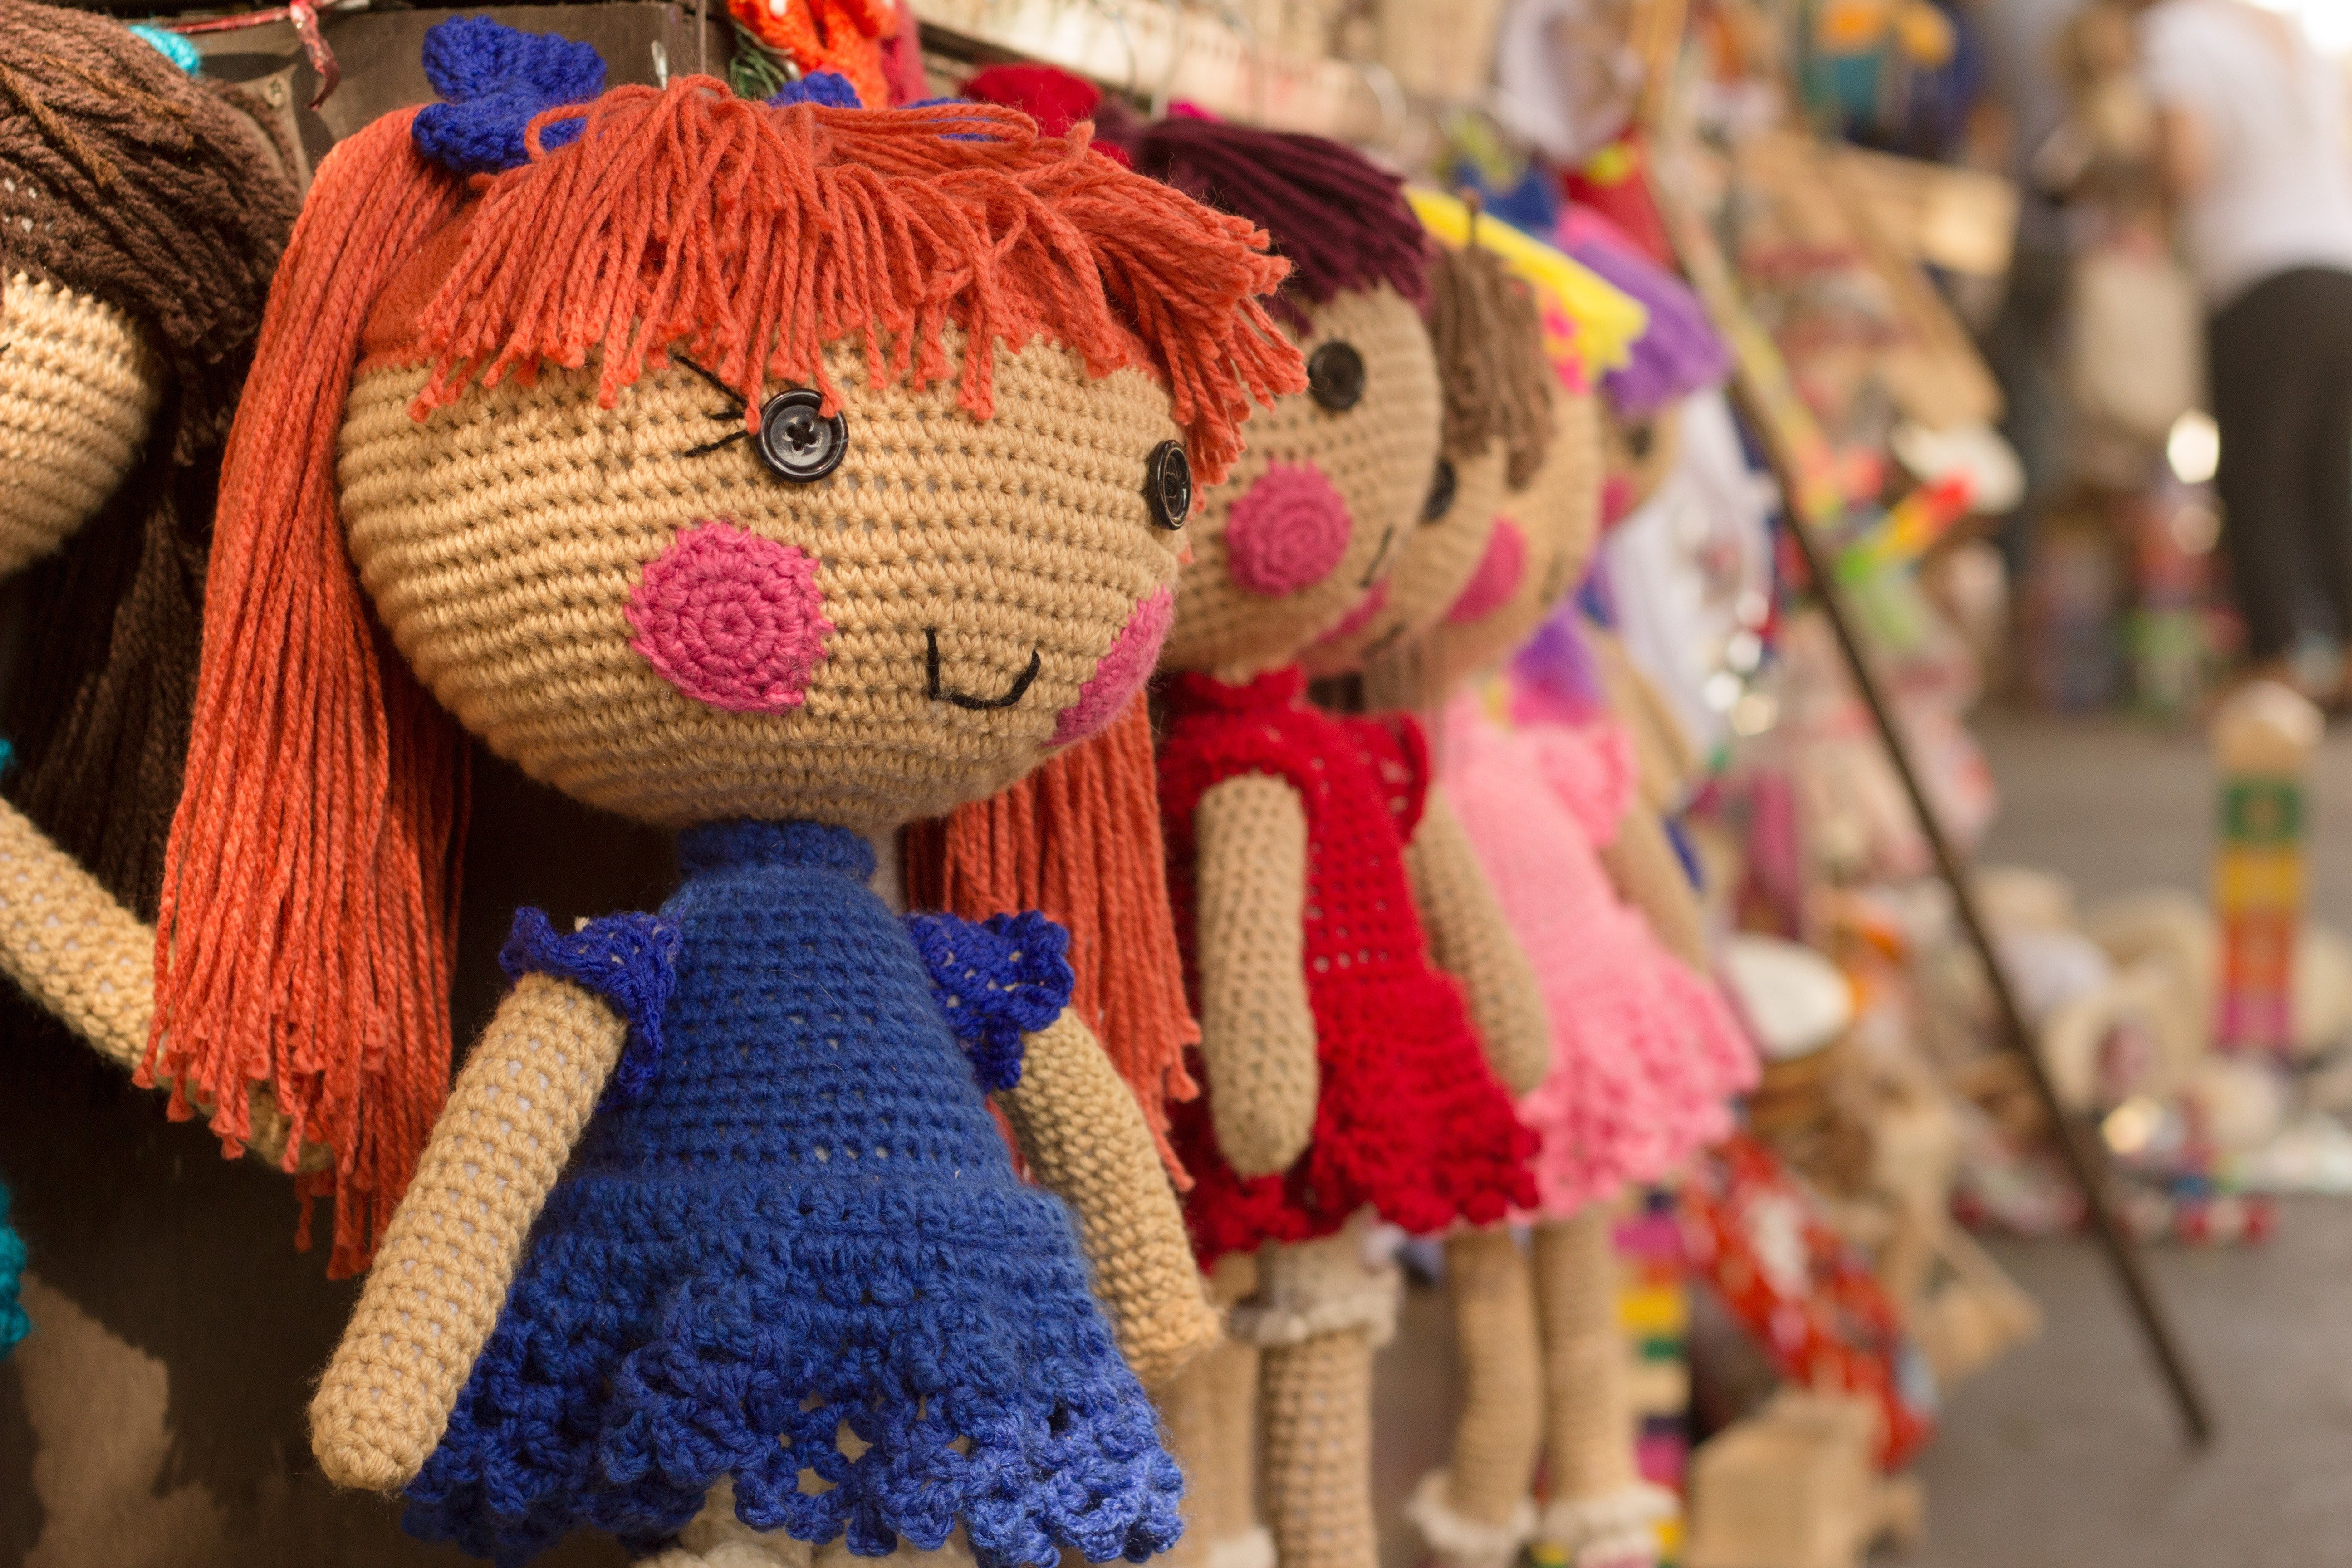 Die Frau verkaufte Puppen für ihren Lebensunterhalt | Quelle: Pexels